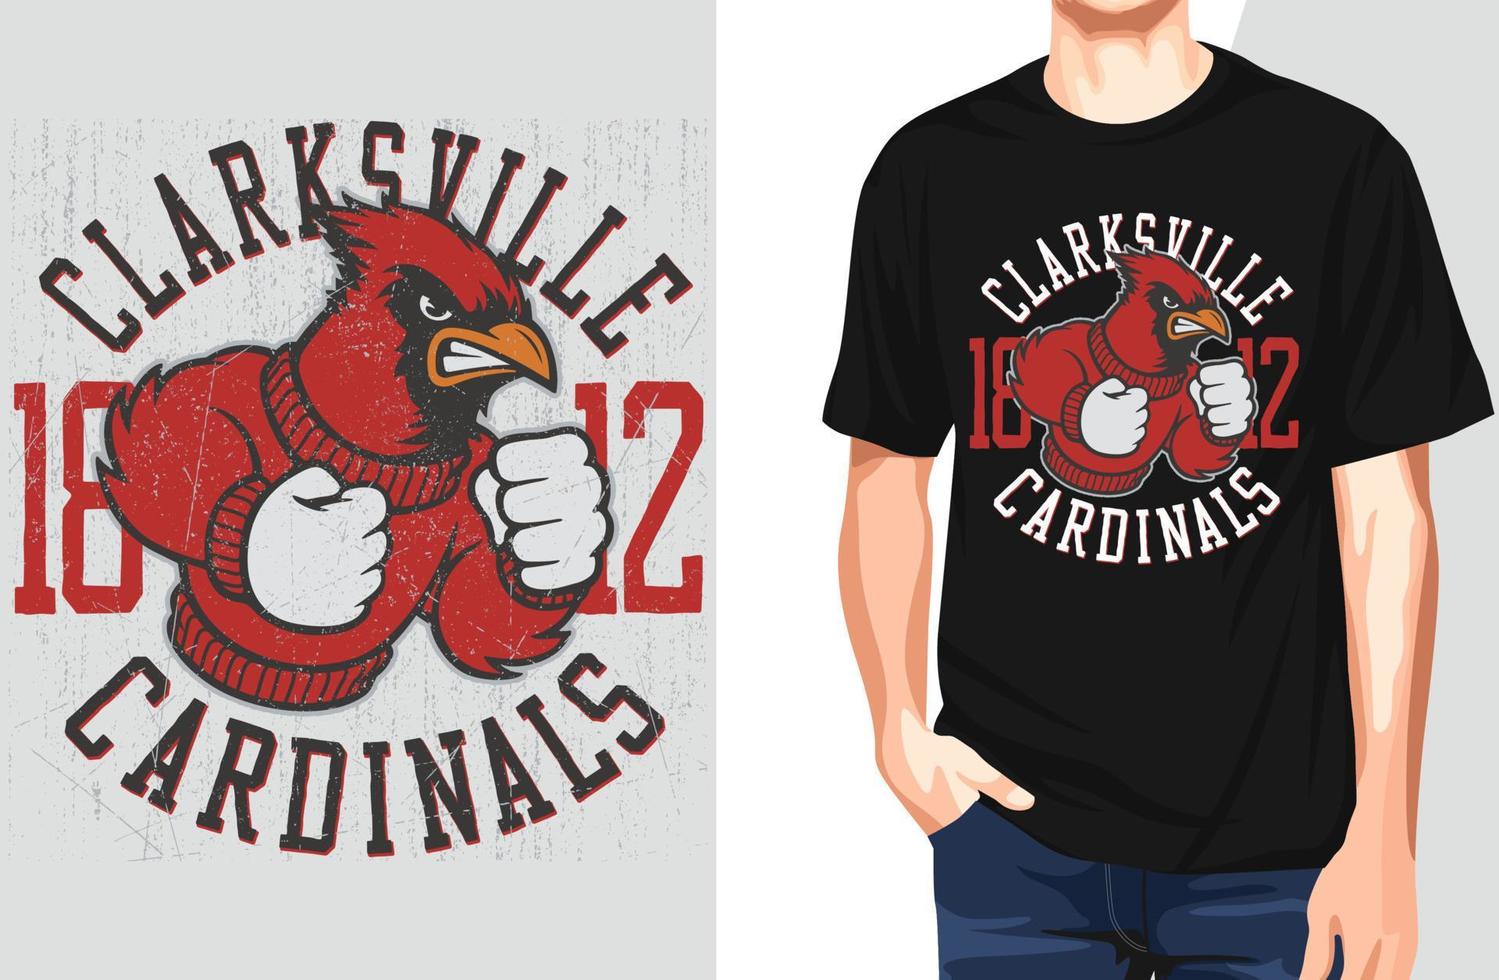 clarksville 1812 cardinali t shirt.può essere utilizzato per la stampa di t-shirt, stampa di tazze, cuscini, design di stampa di moda, abbigliamento per bambini, baby shower, auguri e cartoline. disegno della maglietta vettore